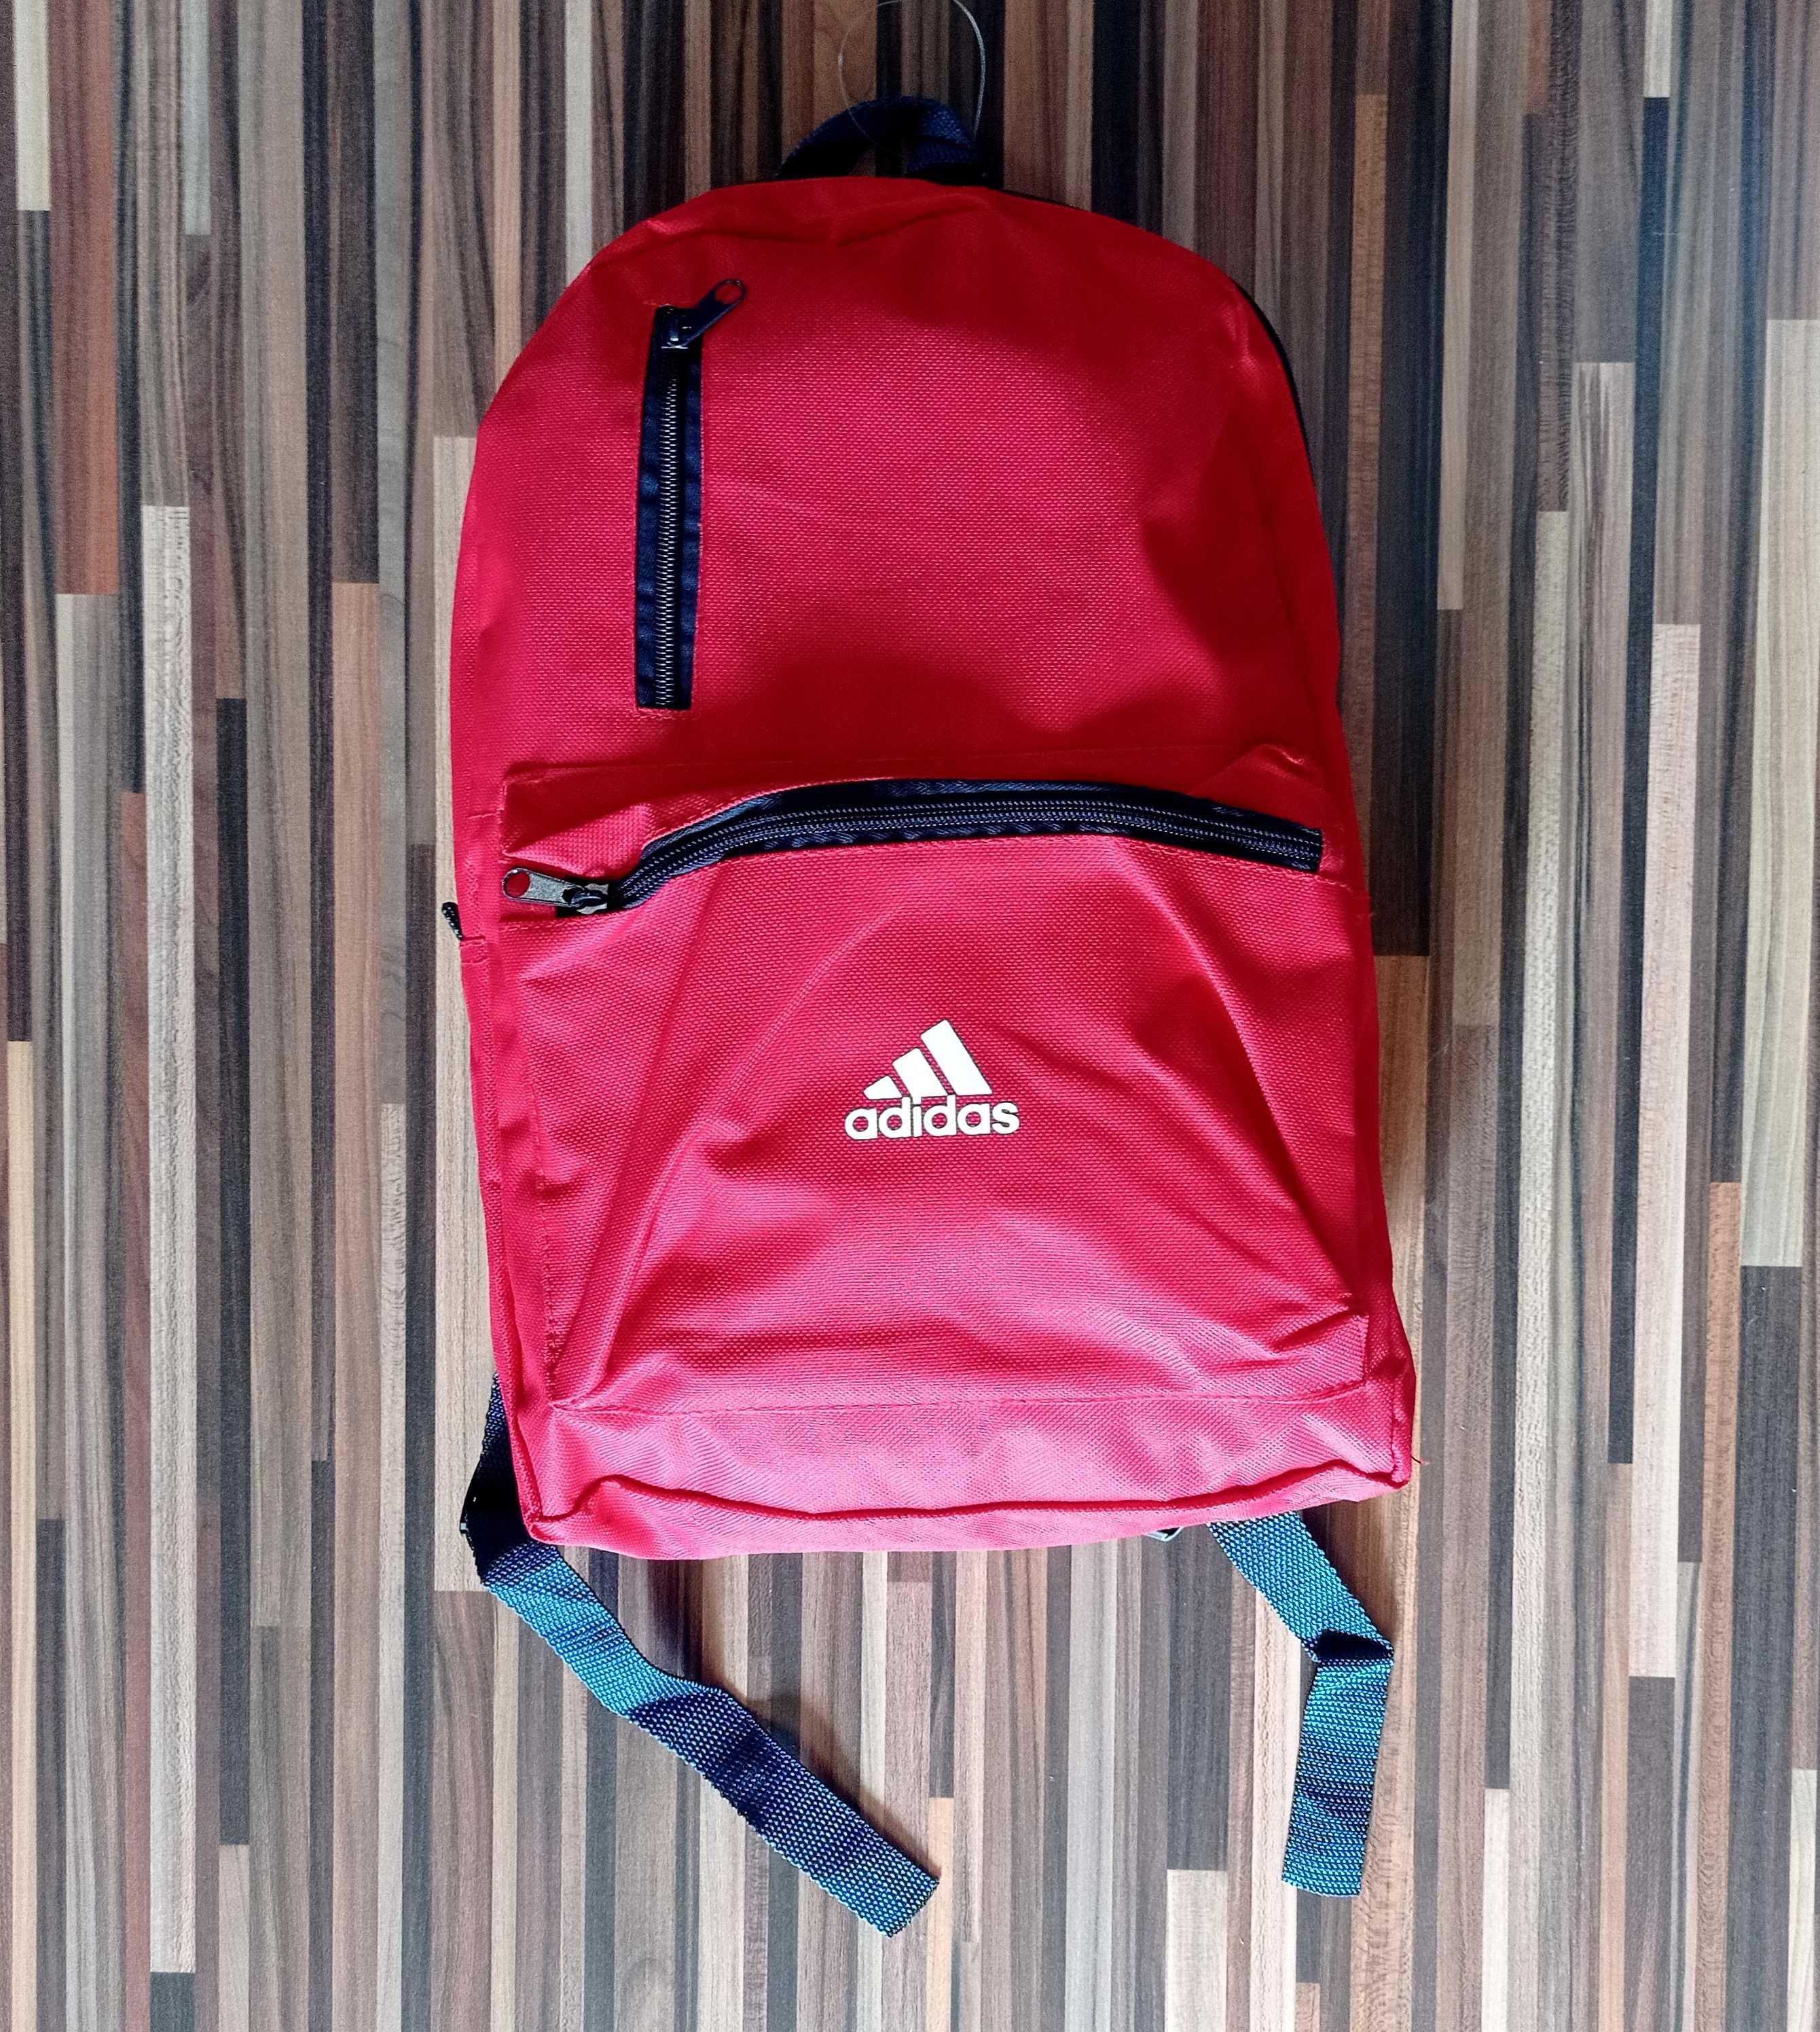 adidas plecak nowy mieści A4 czerwony